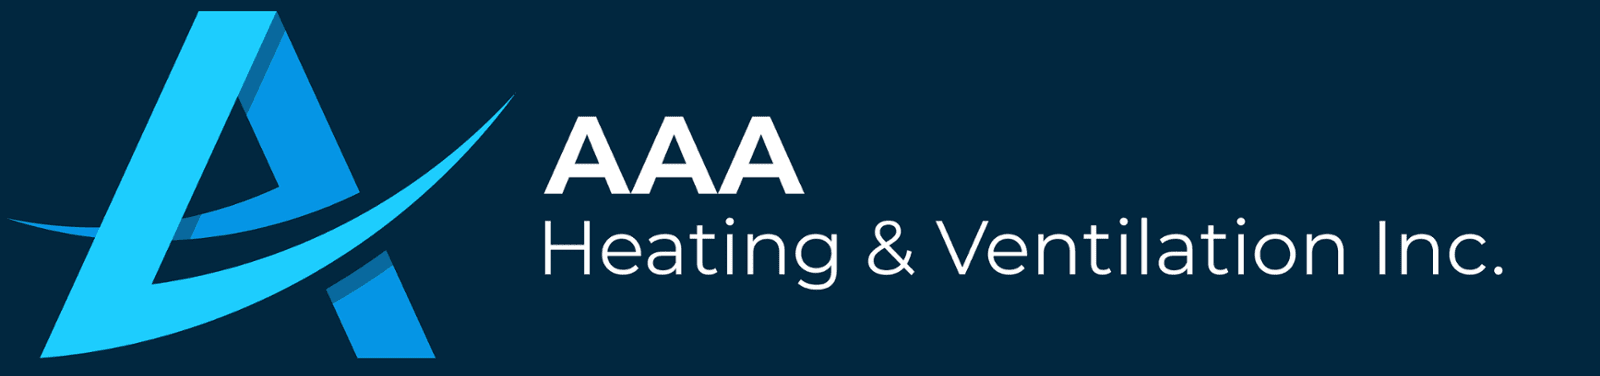 AAA Heating & Ventilation Inc.